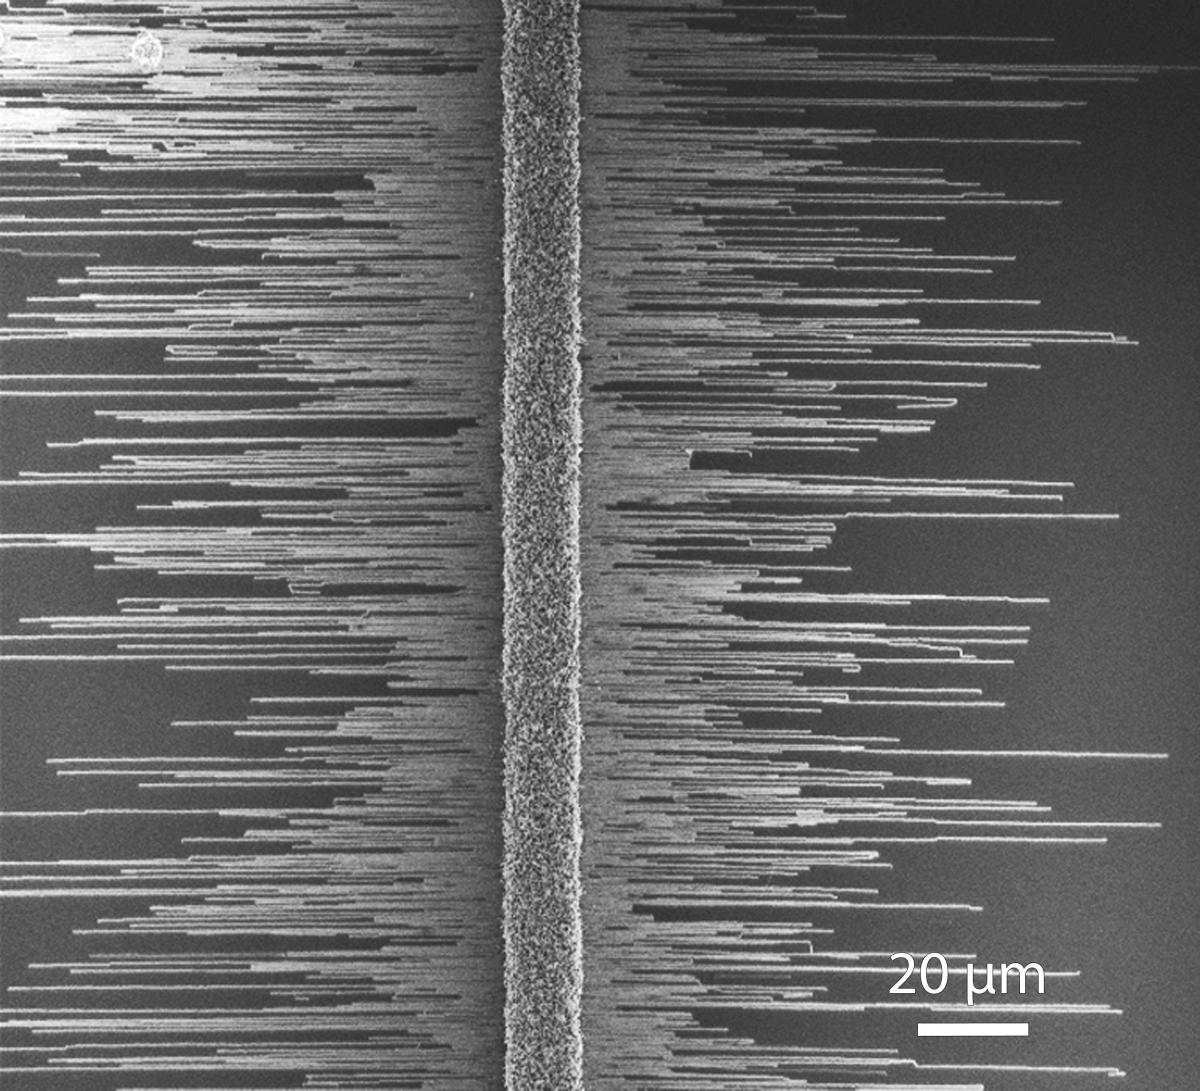 תצלום של הננו-חוטים במיקרוסקופ אלקטרונים סורק